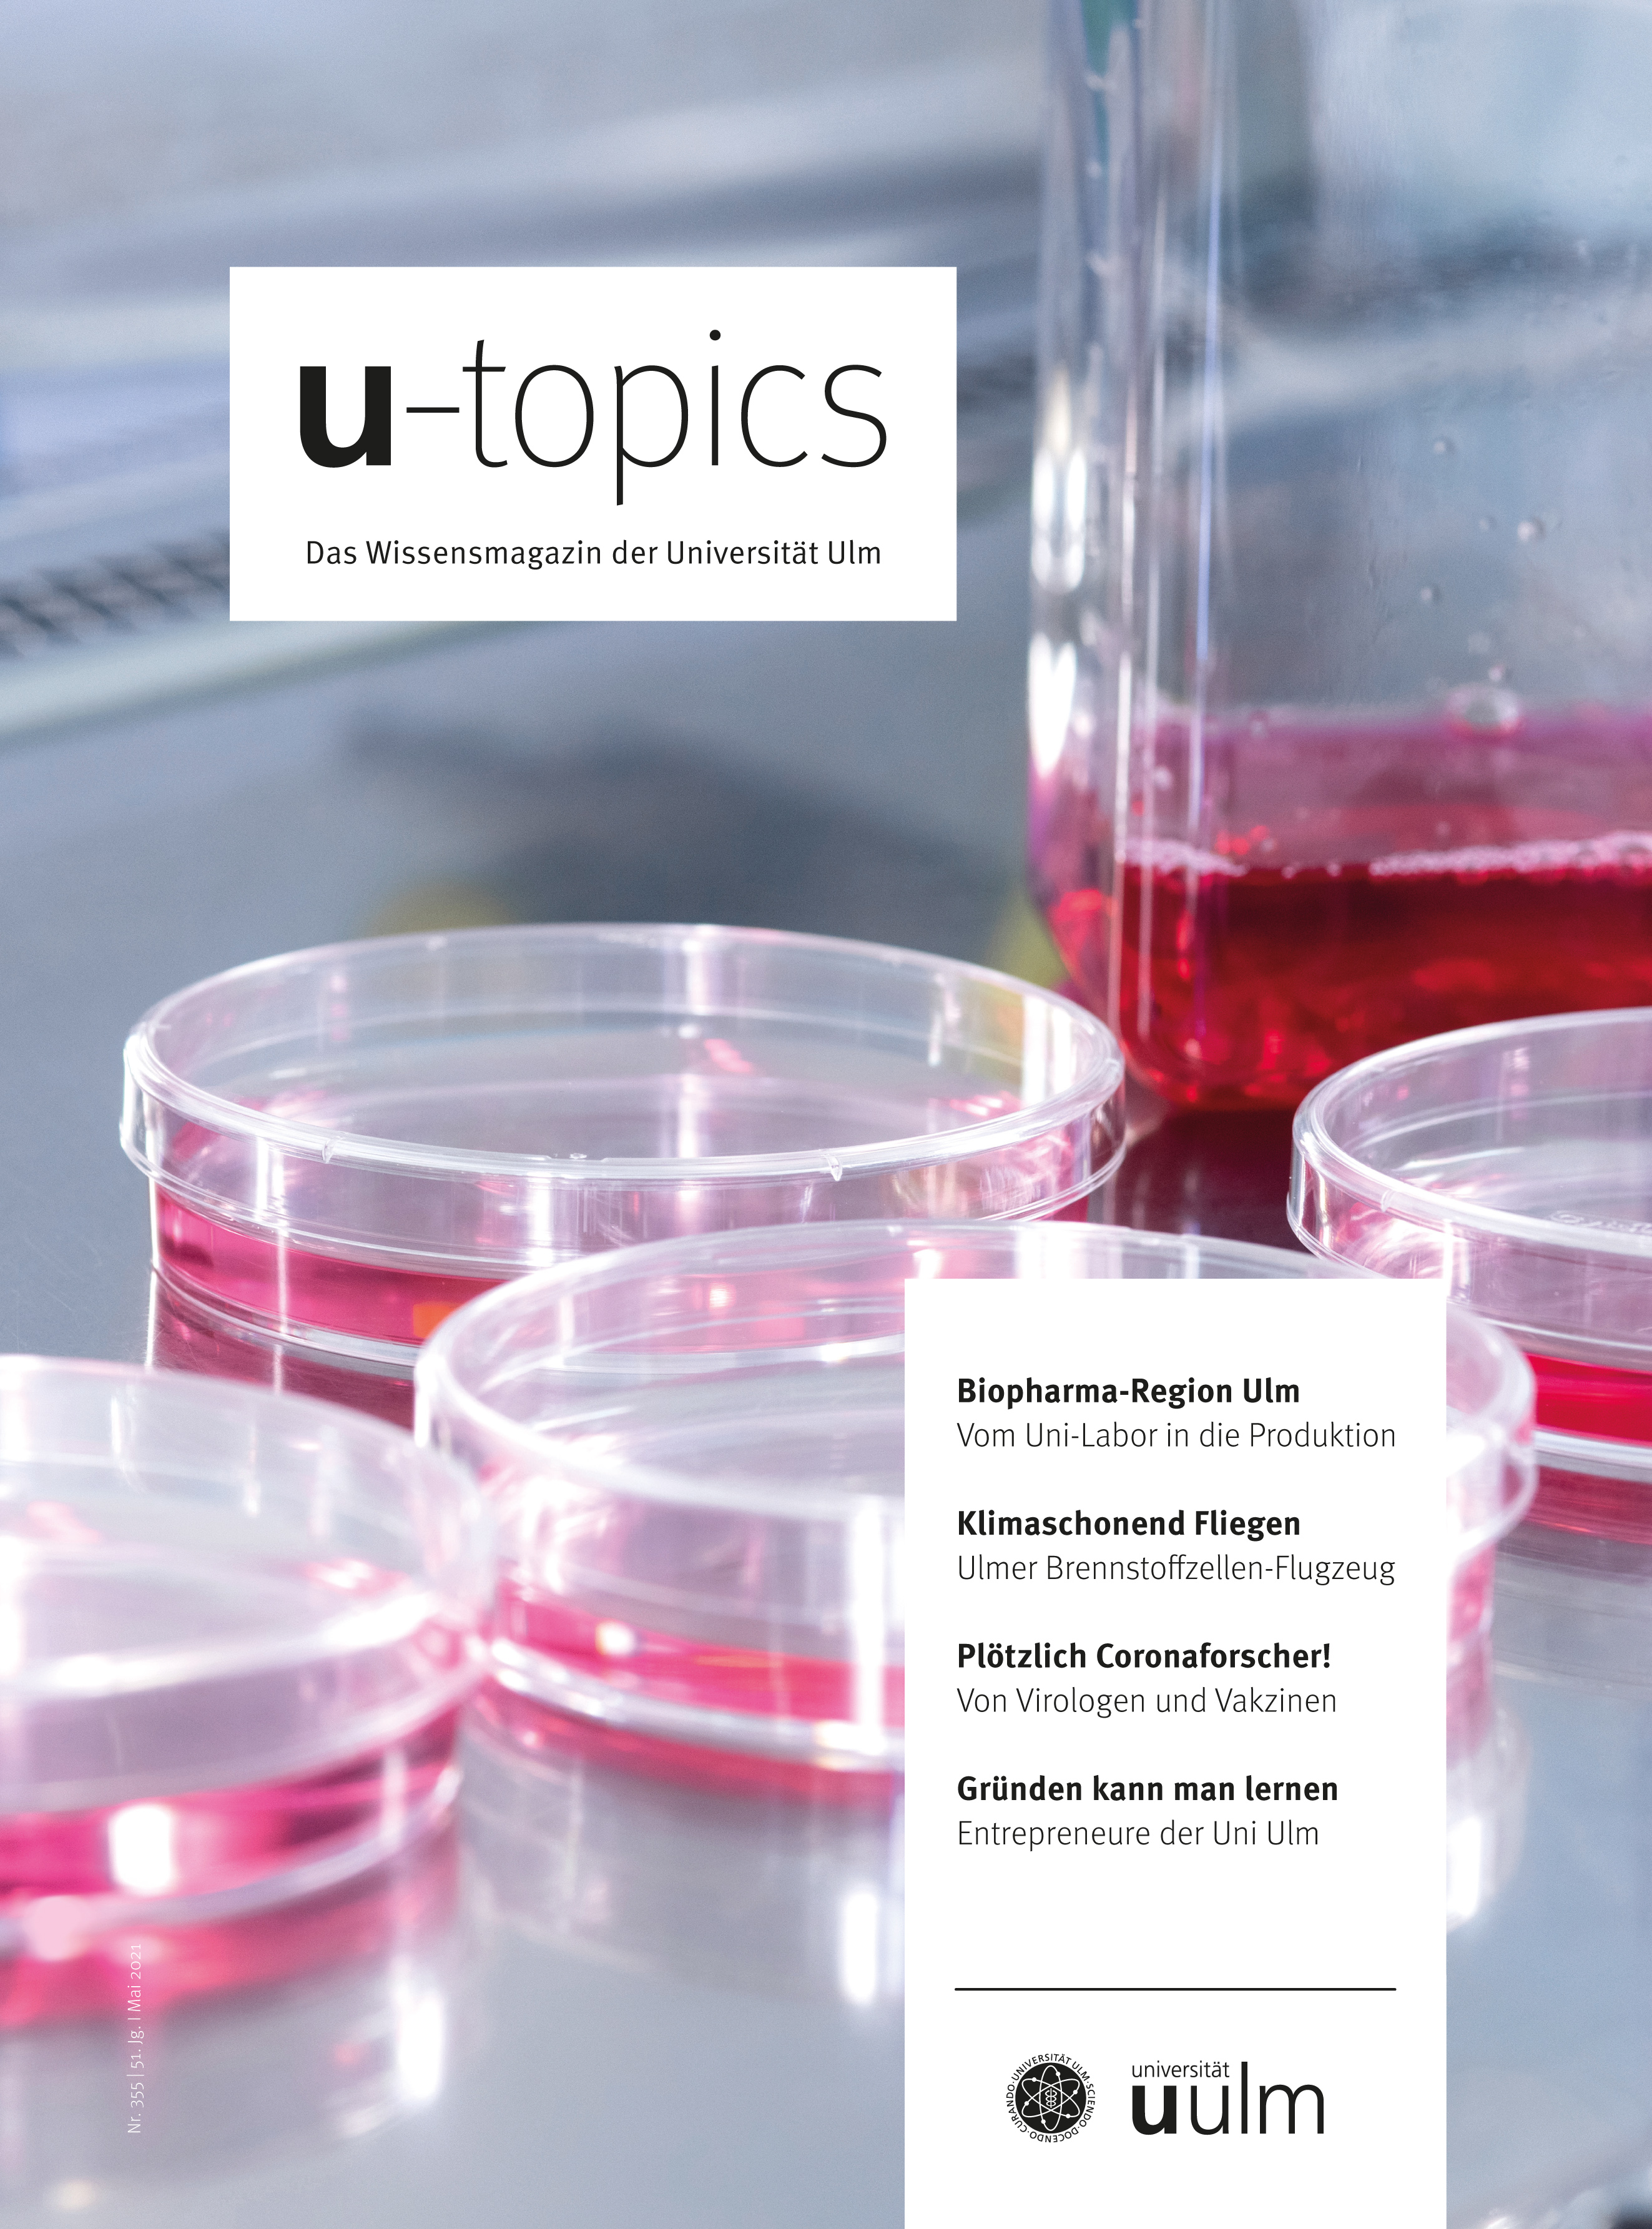 Titelbild U-topics Sommersemester 2021 - Petrischalen mit rosa Flüssigkeit